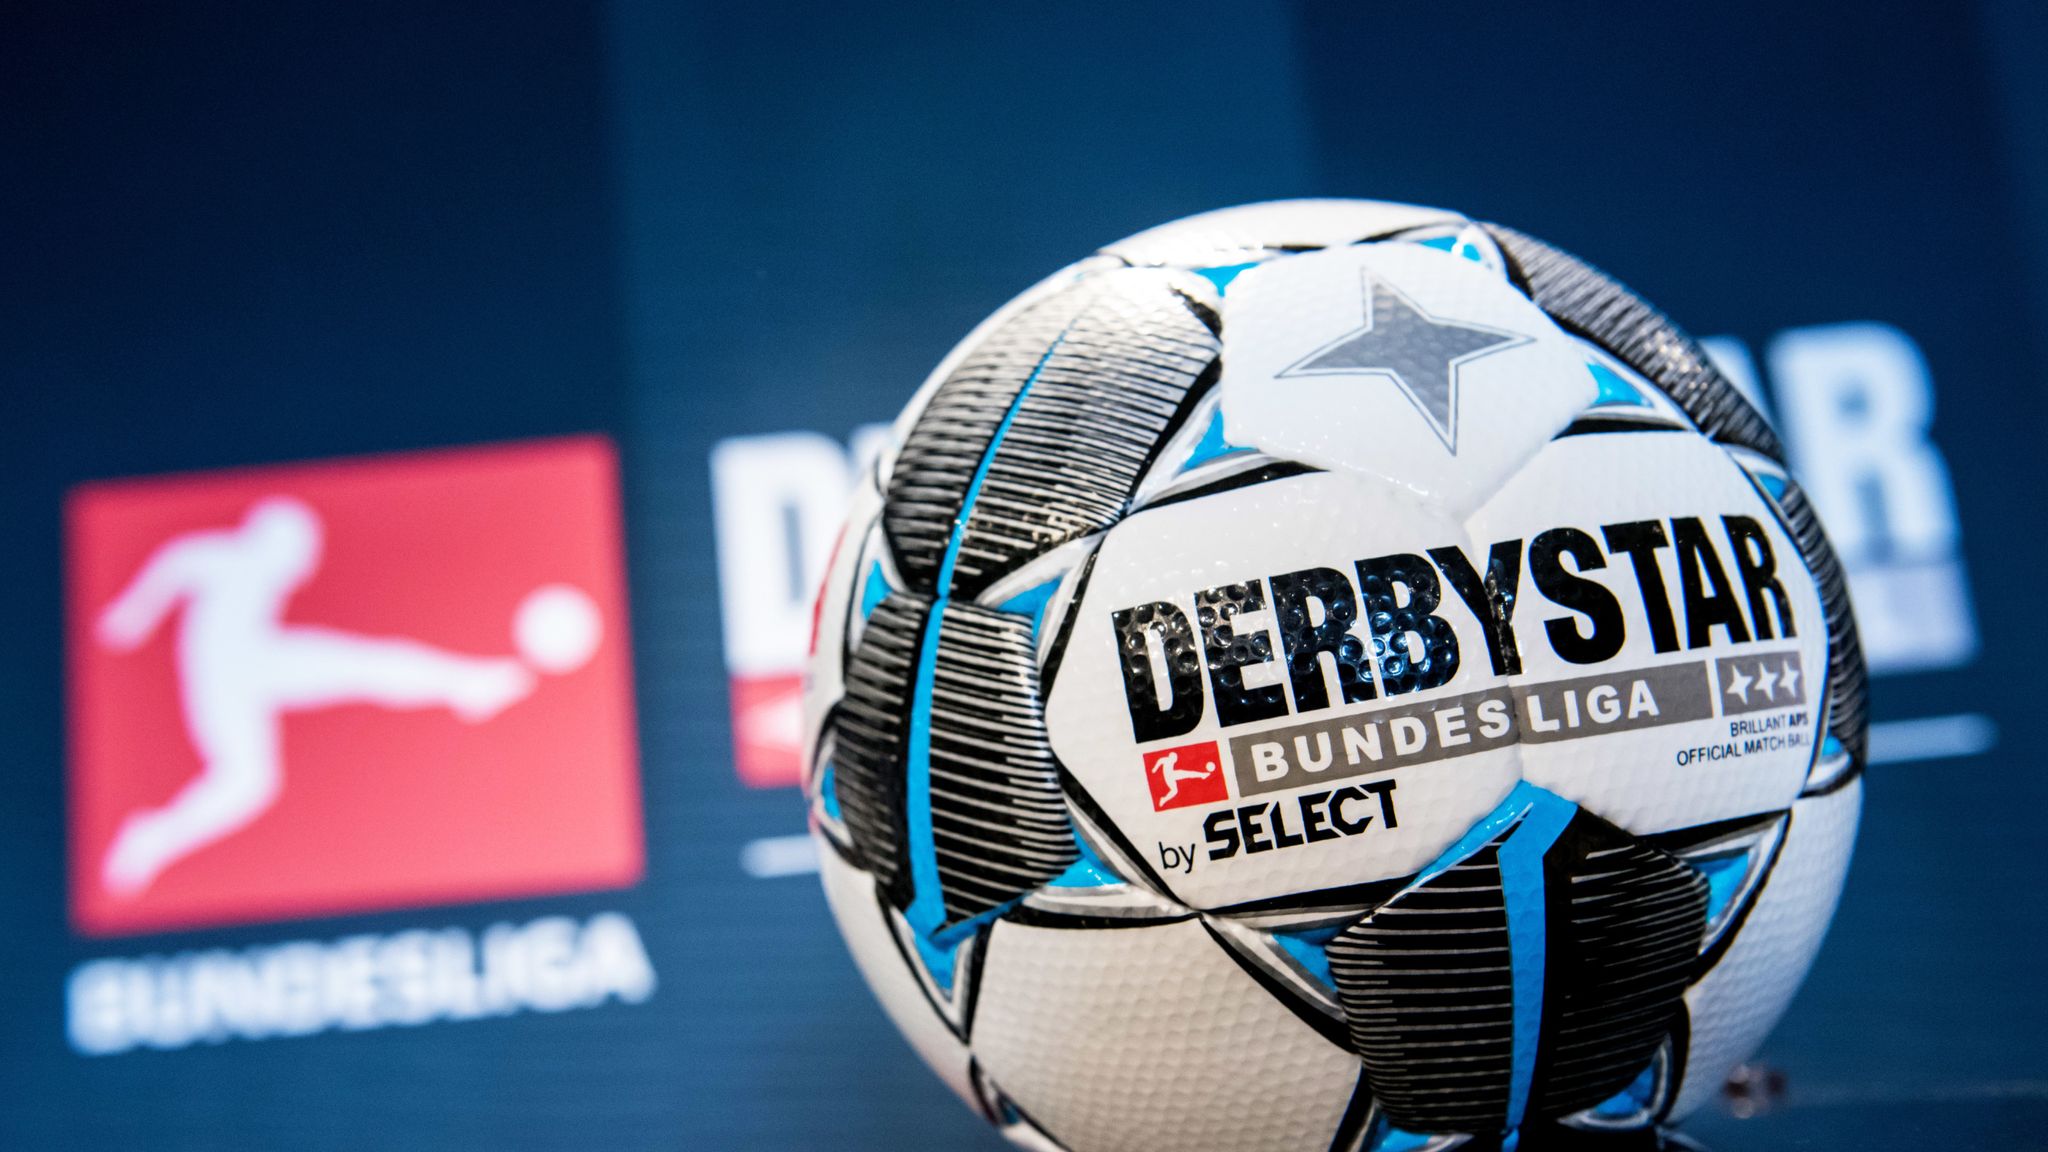 Derbystar stellt neuen BundesligaBall vor Fußball News Sky Sport